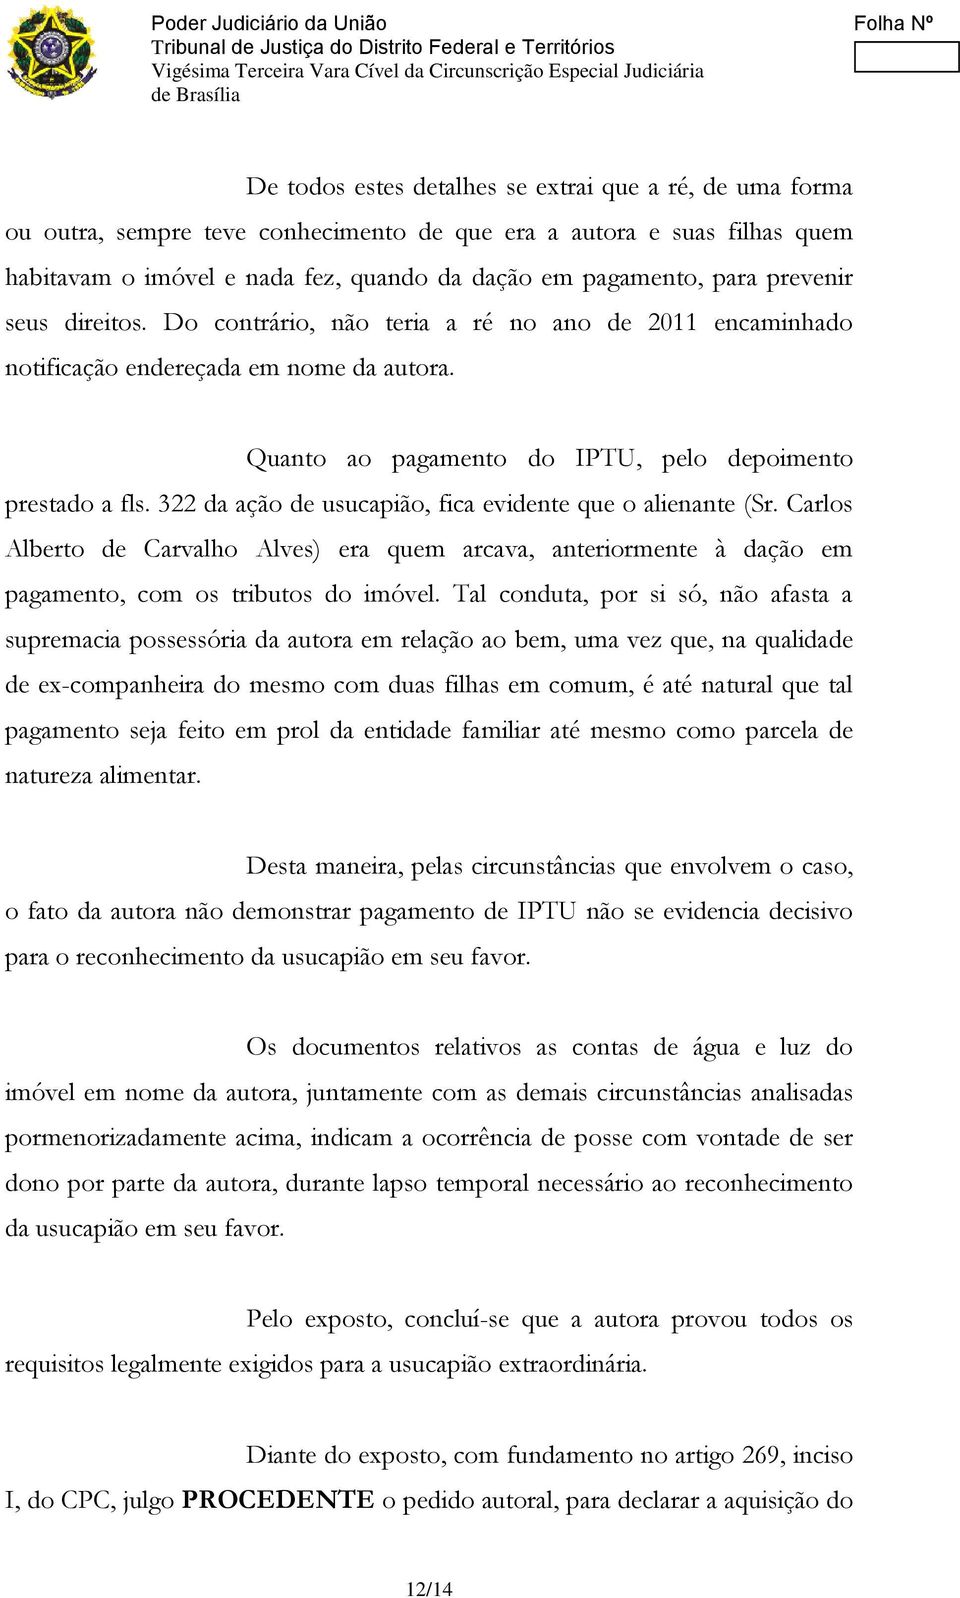 322 da ação de usucapião, fica evidente que o alienante (Sr. Carlos Alberto de Carvalho Alves) era quem arcava, anteriormente à dação em pagamento, com os tributos do imóvel.